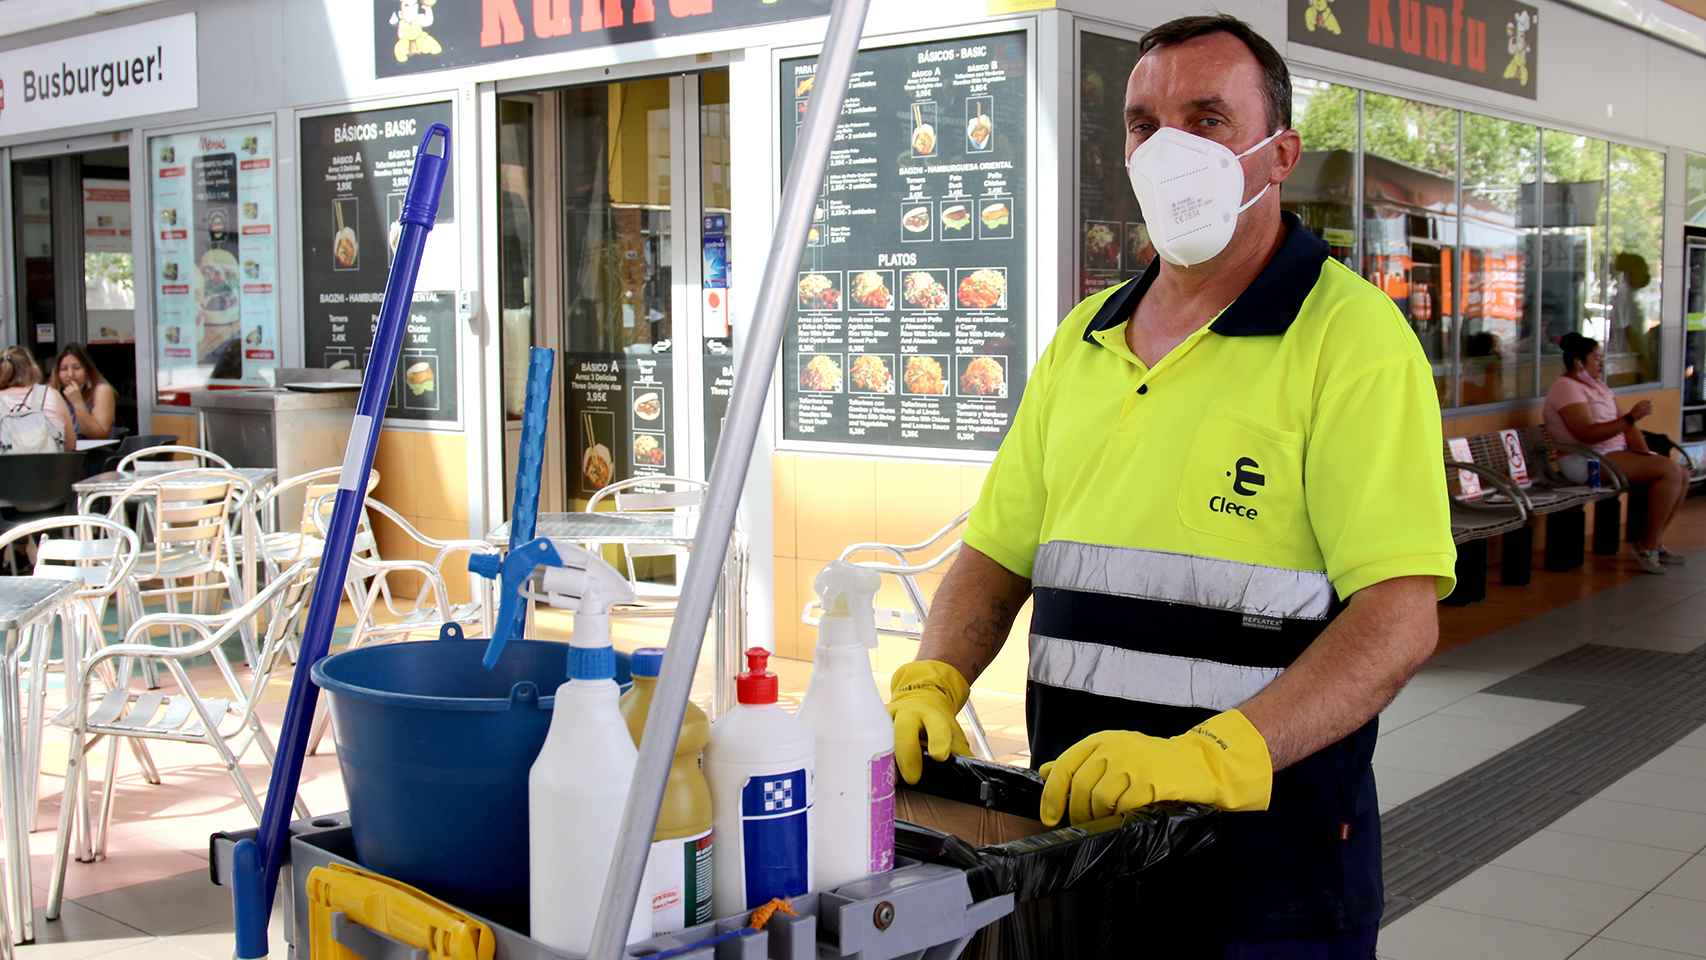 Juan Manuel, de 51 años, trabaja limpiando estaciones de autobús y asegura que hoy lleva fatal el calor.